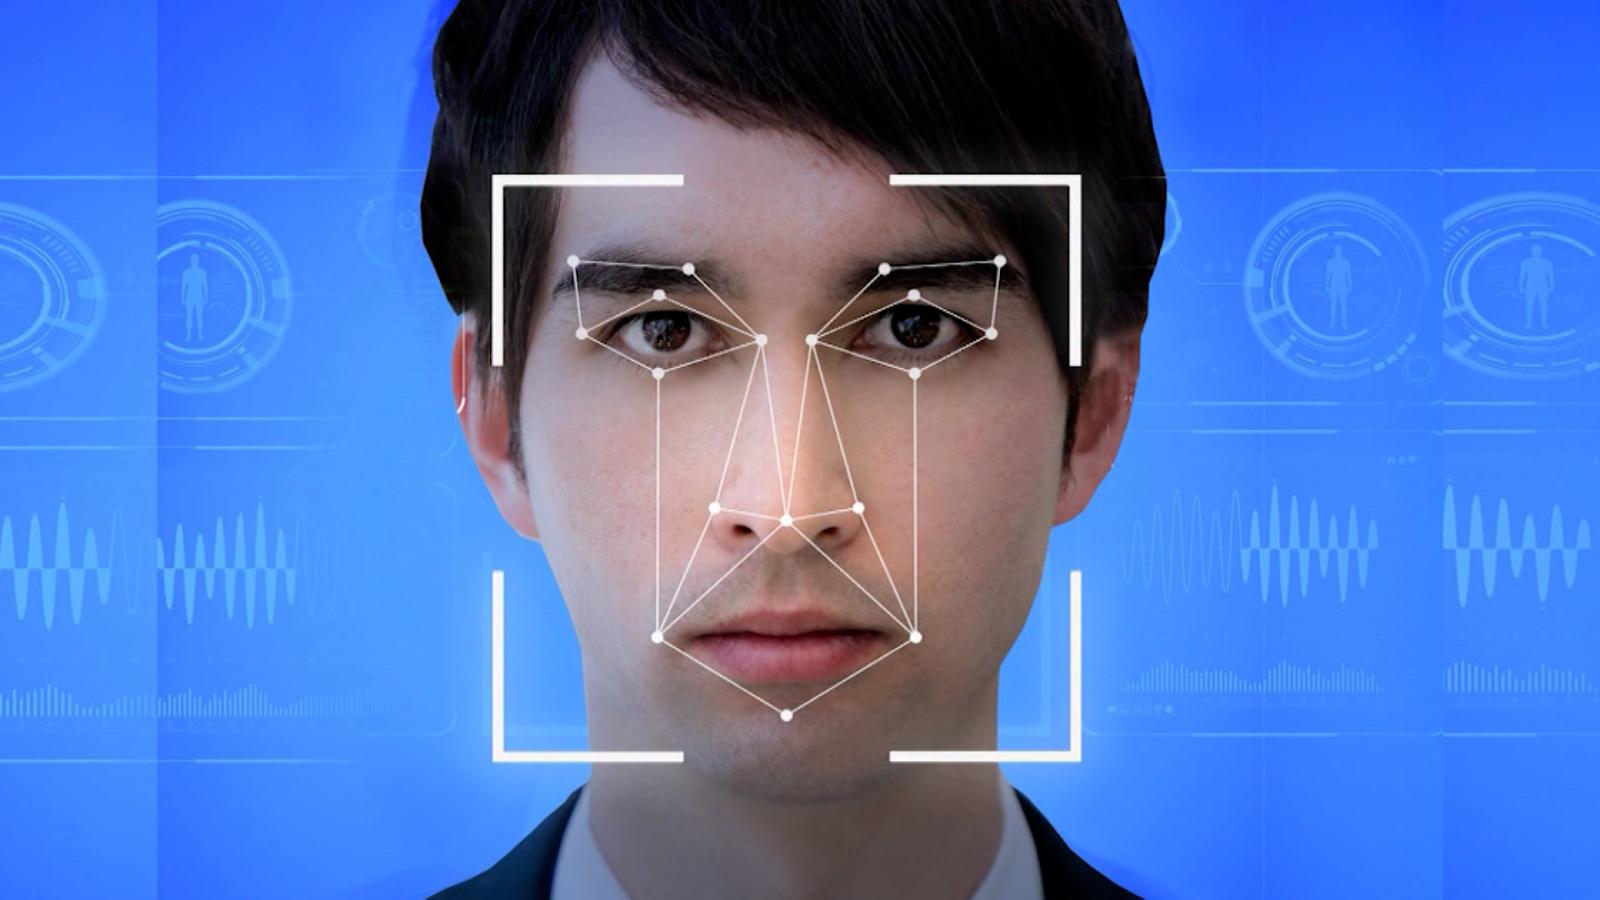 Wiki faces com id421421628. Распознавание лиц. Сканирование лица. Биометрия лица. Система распознавания лиц.